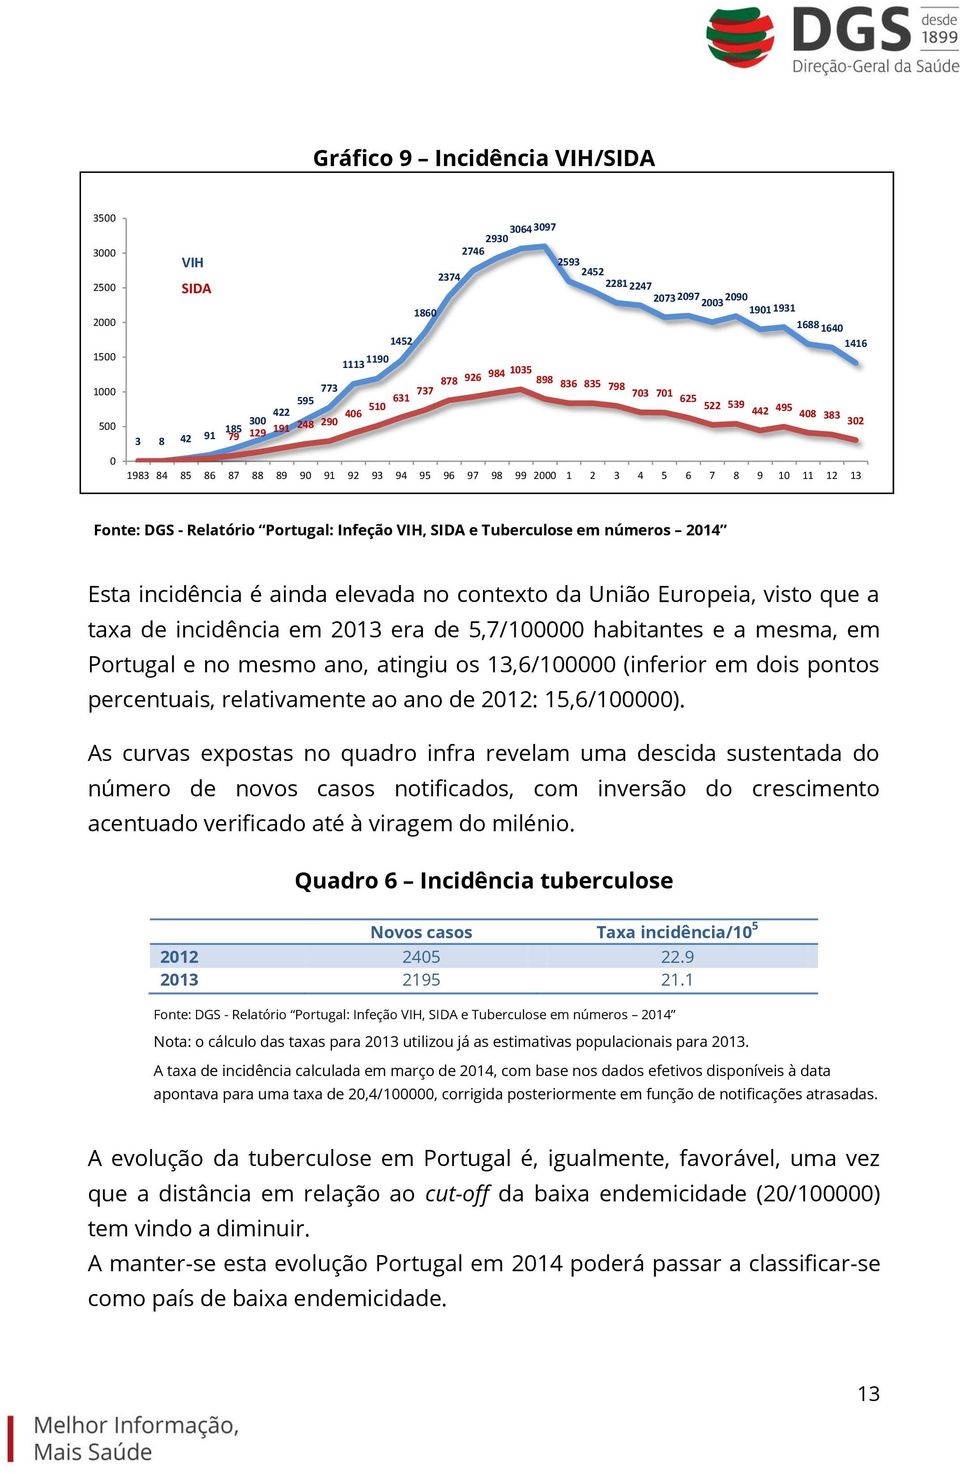 9 10 11 12 13 Fonte: DGS - Relatório Portugal: Infeção VIH, SIDA e Tuberculose em números 2014 Esta incidência é ainda elevada no contexto da União Europeia, visto que a taxa de incidência em 2013